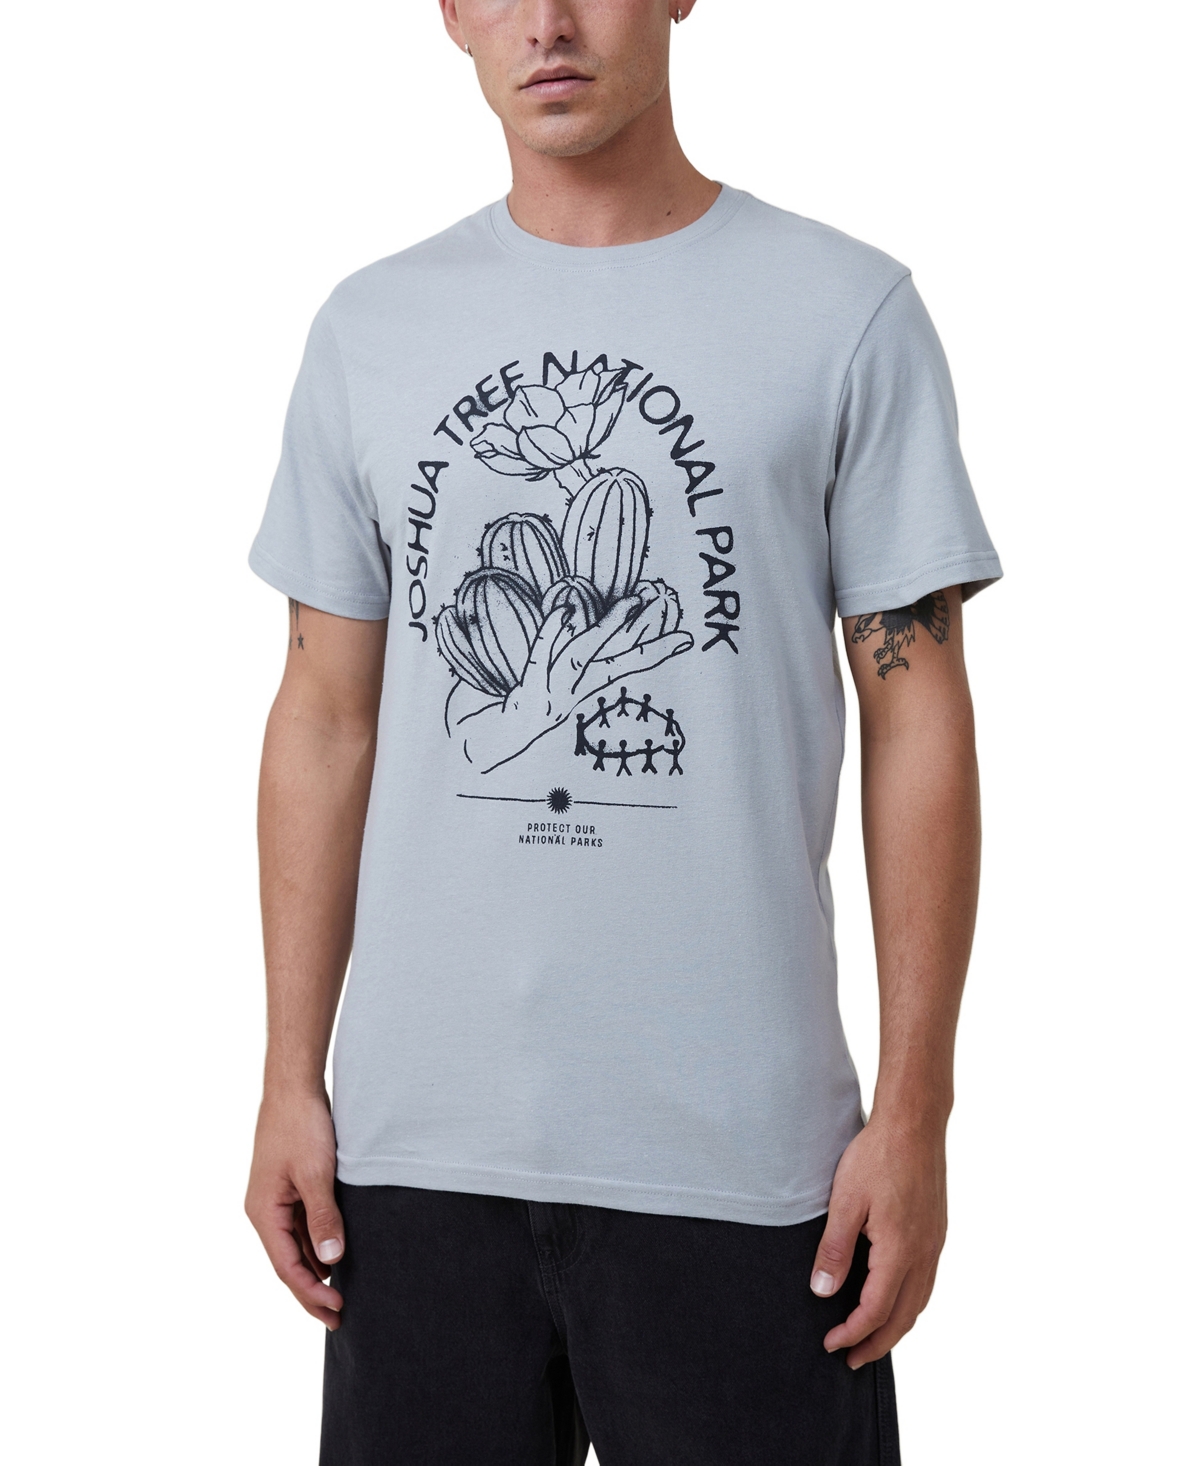 Cotton On Men's Tbar Art Crew Neck T-shirt